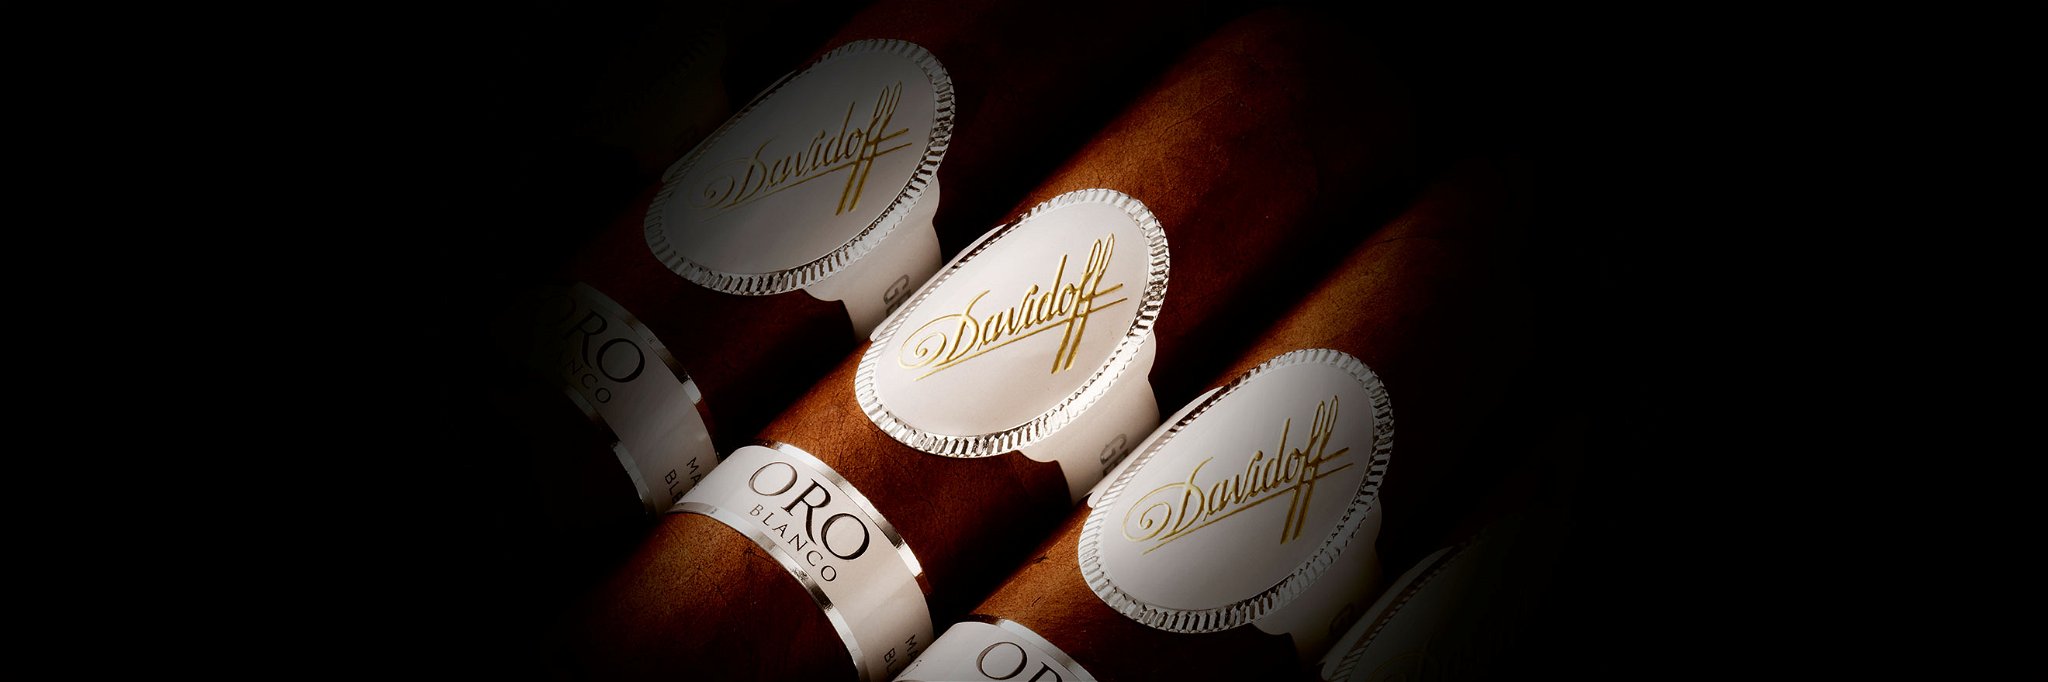 Passionierte Zigarrensammler dürfen sich über die limitierte Edition Oro Blanco Special Reserve 2002 freuen.